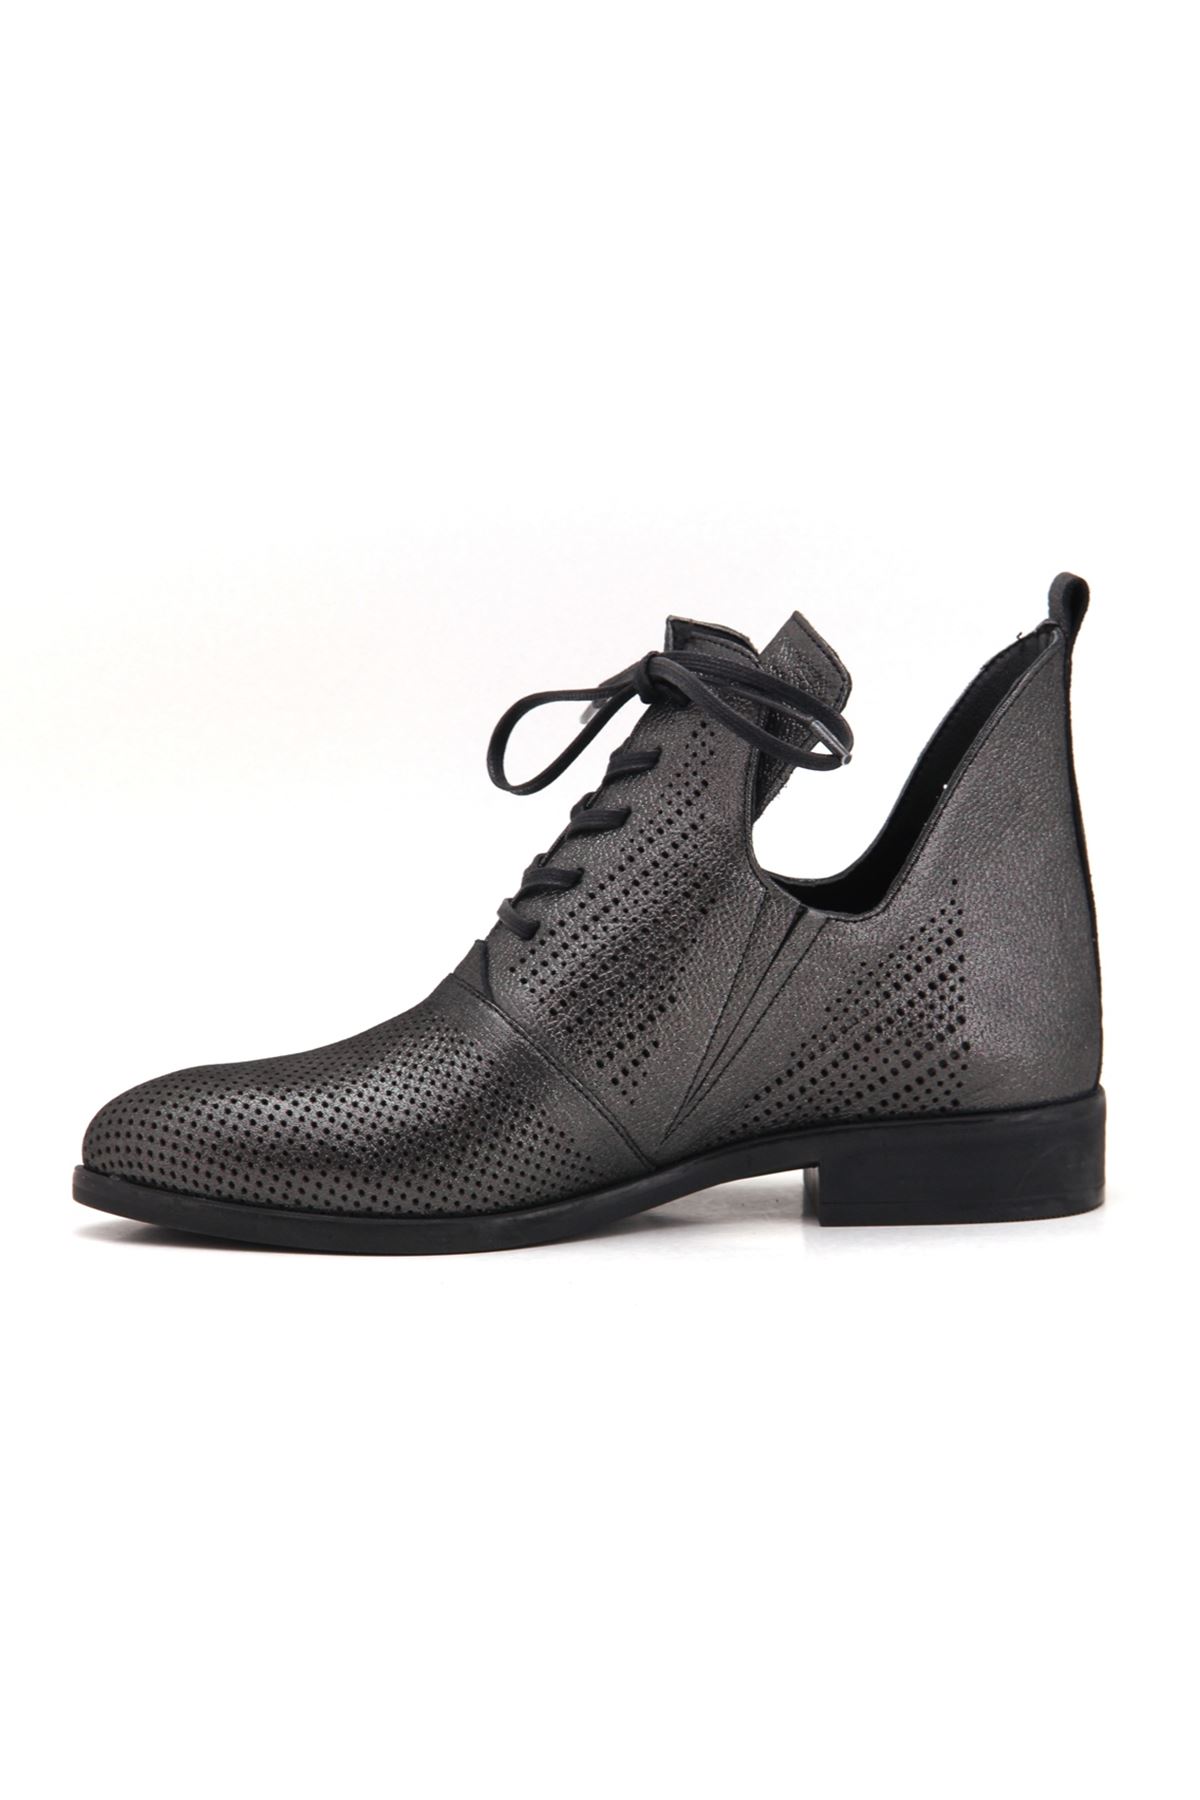 D20YA-425 Mammamia Günlük Bayan Ayakkabı - Siyah Çelik